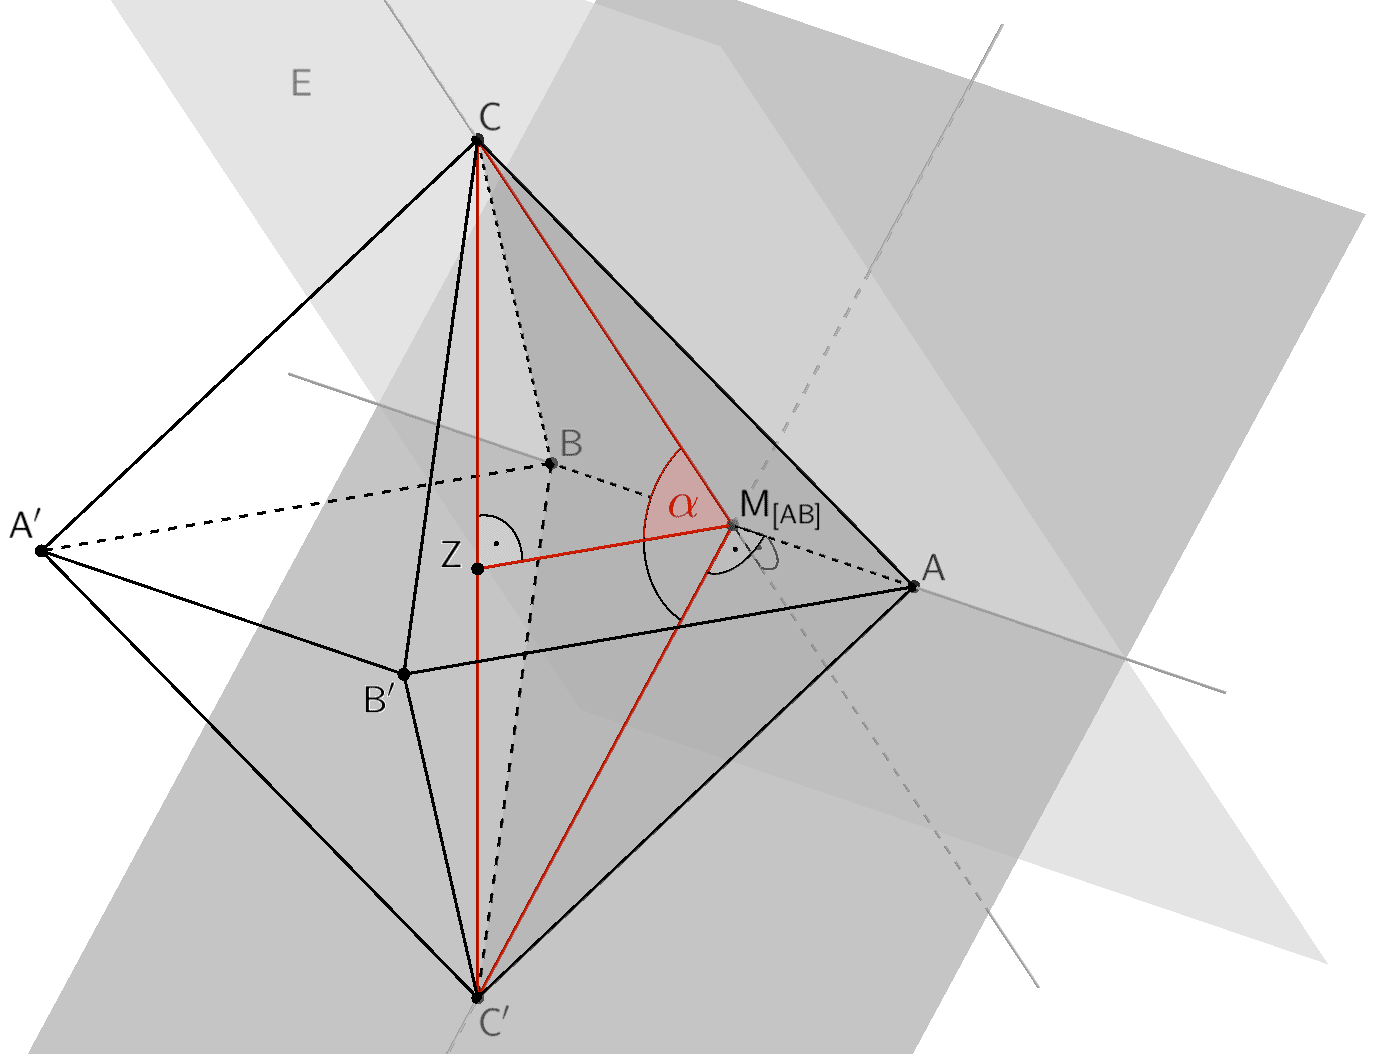 Neigungswinkel α der Ebene E (Dreieck ABC) gegen die Ebene, in der die Punkte A, B und Z liegen